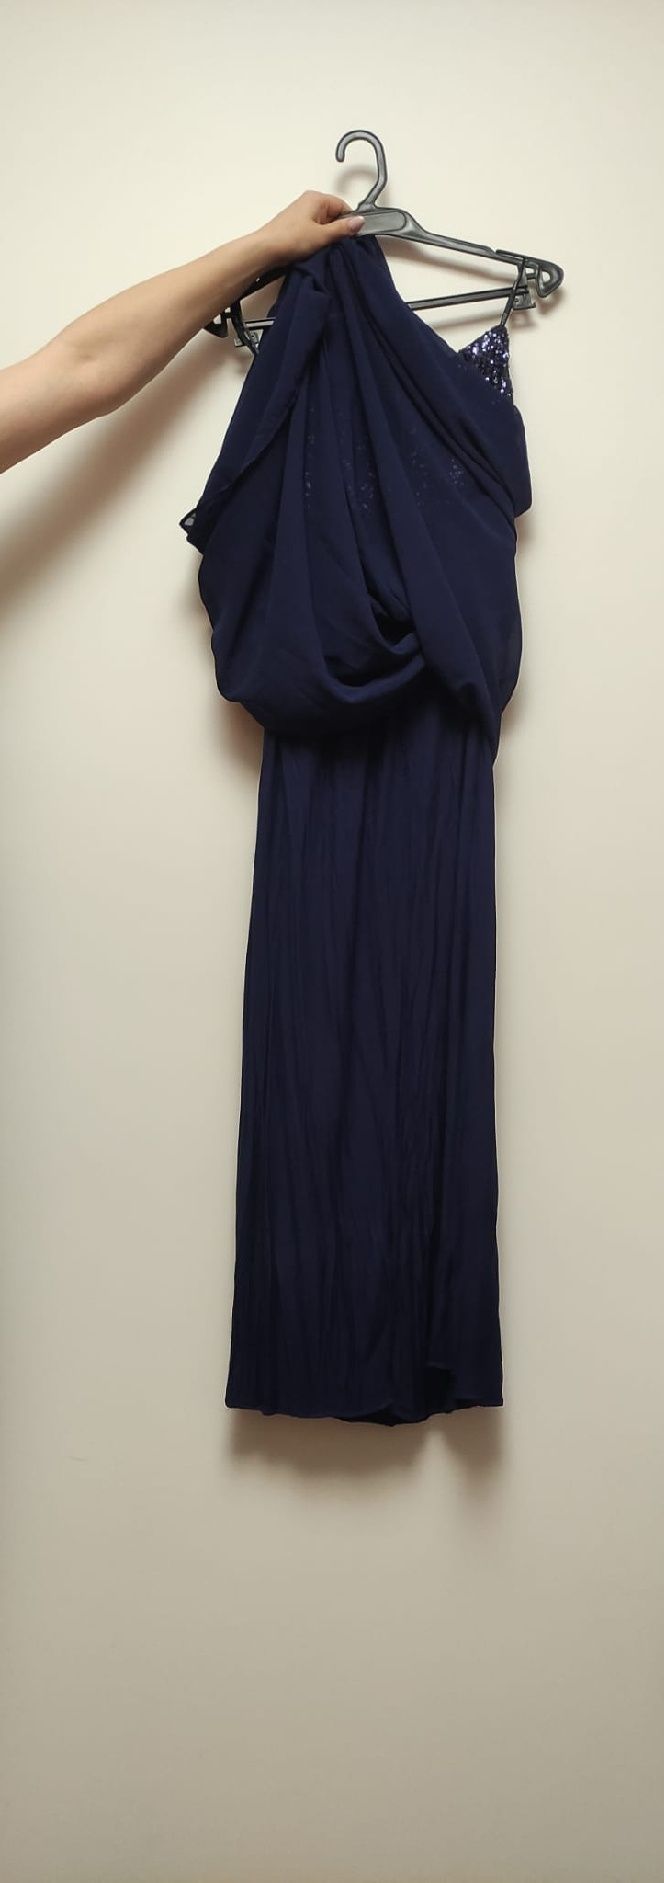 Vestido Cai-cai Azul Escuro com Lantejoulas